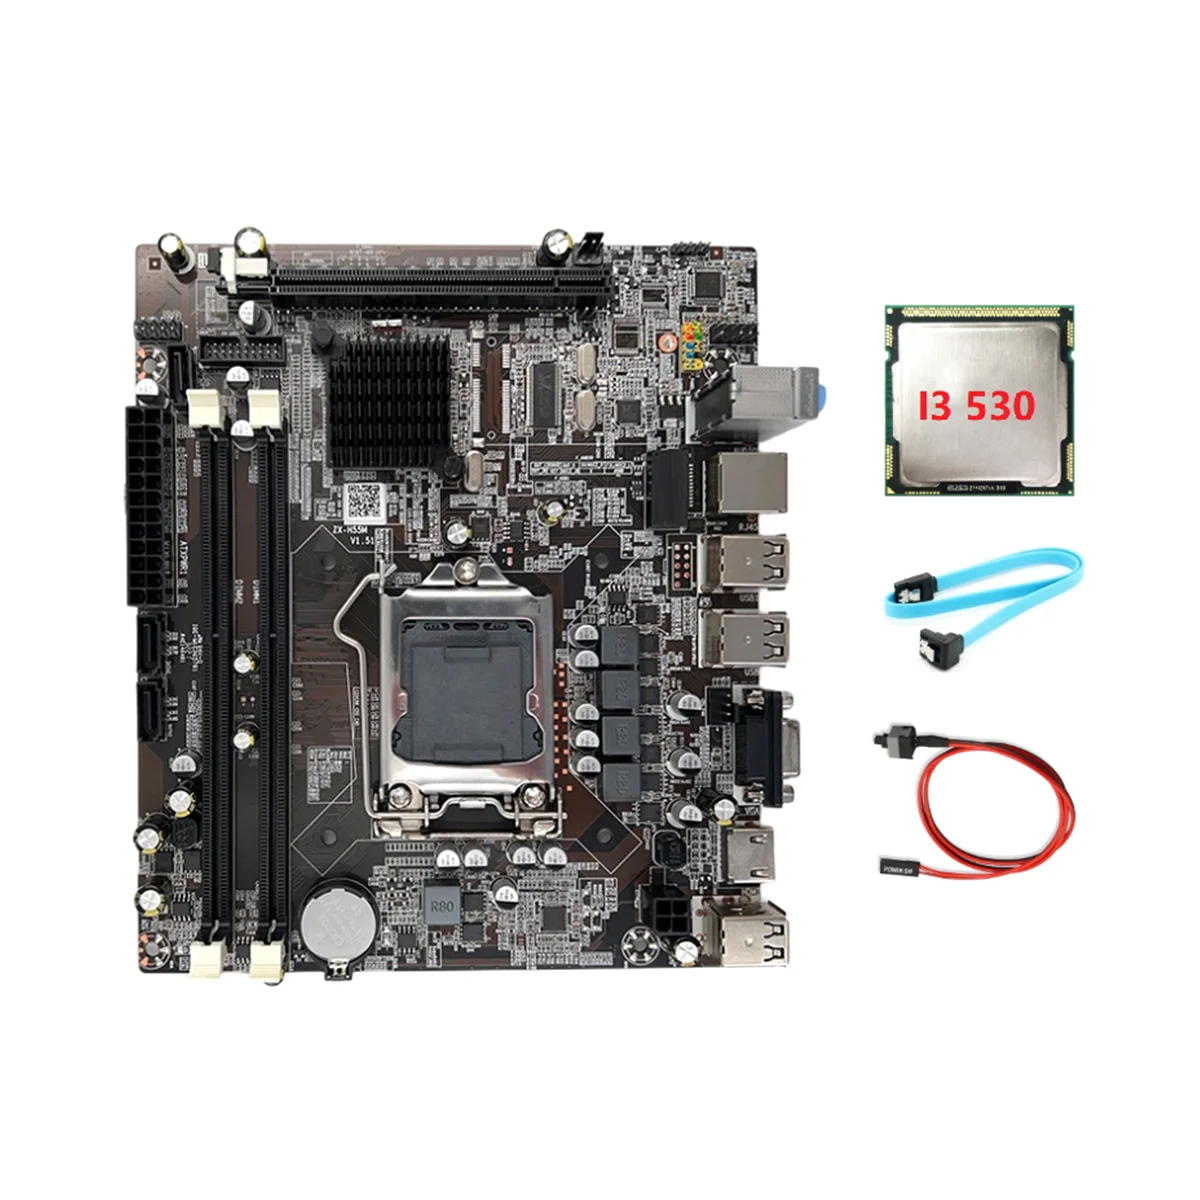 Материнская плата H55 LGA1156 Поддерживает процессор серии I3 530 I5 760 с памятью DDR3 Материнская плата + процессор I3 530 + кабель SATA + Кабель переключателя